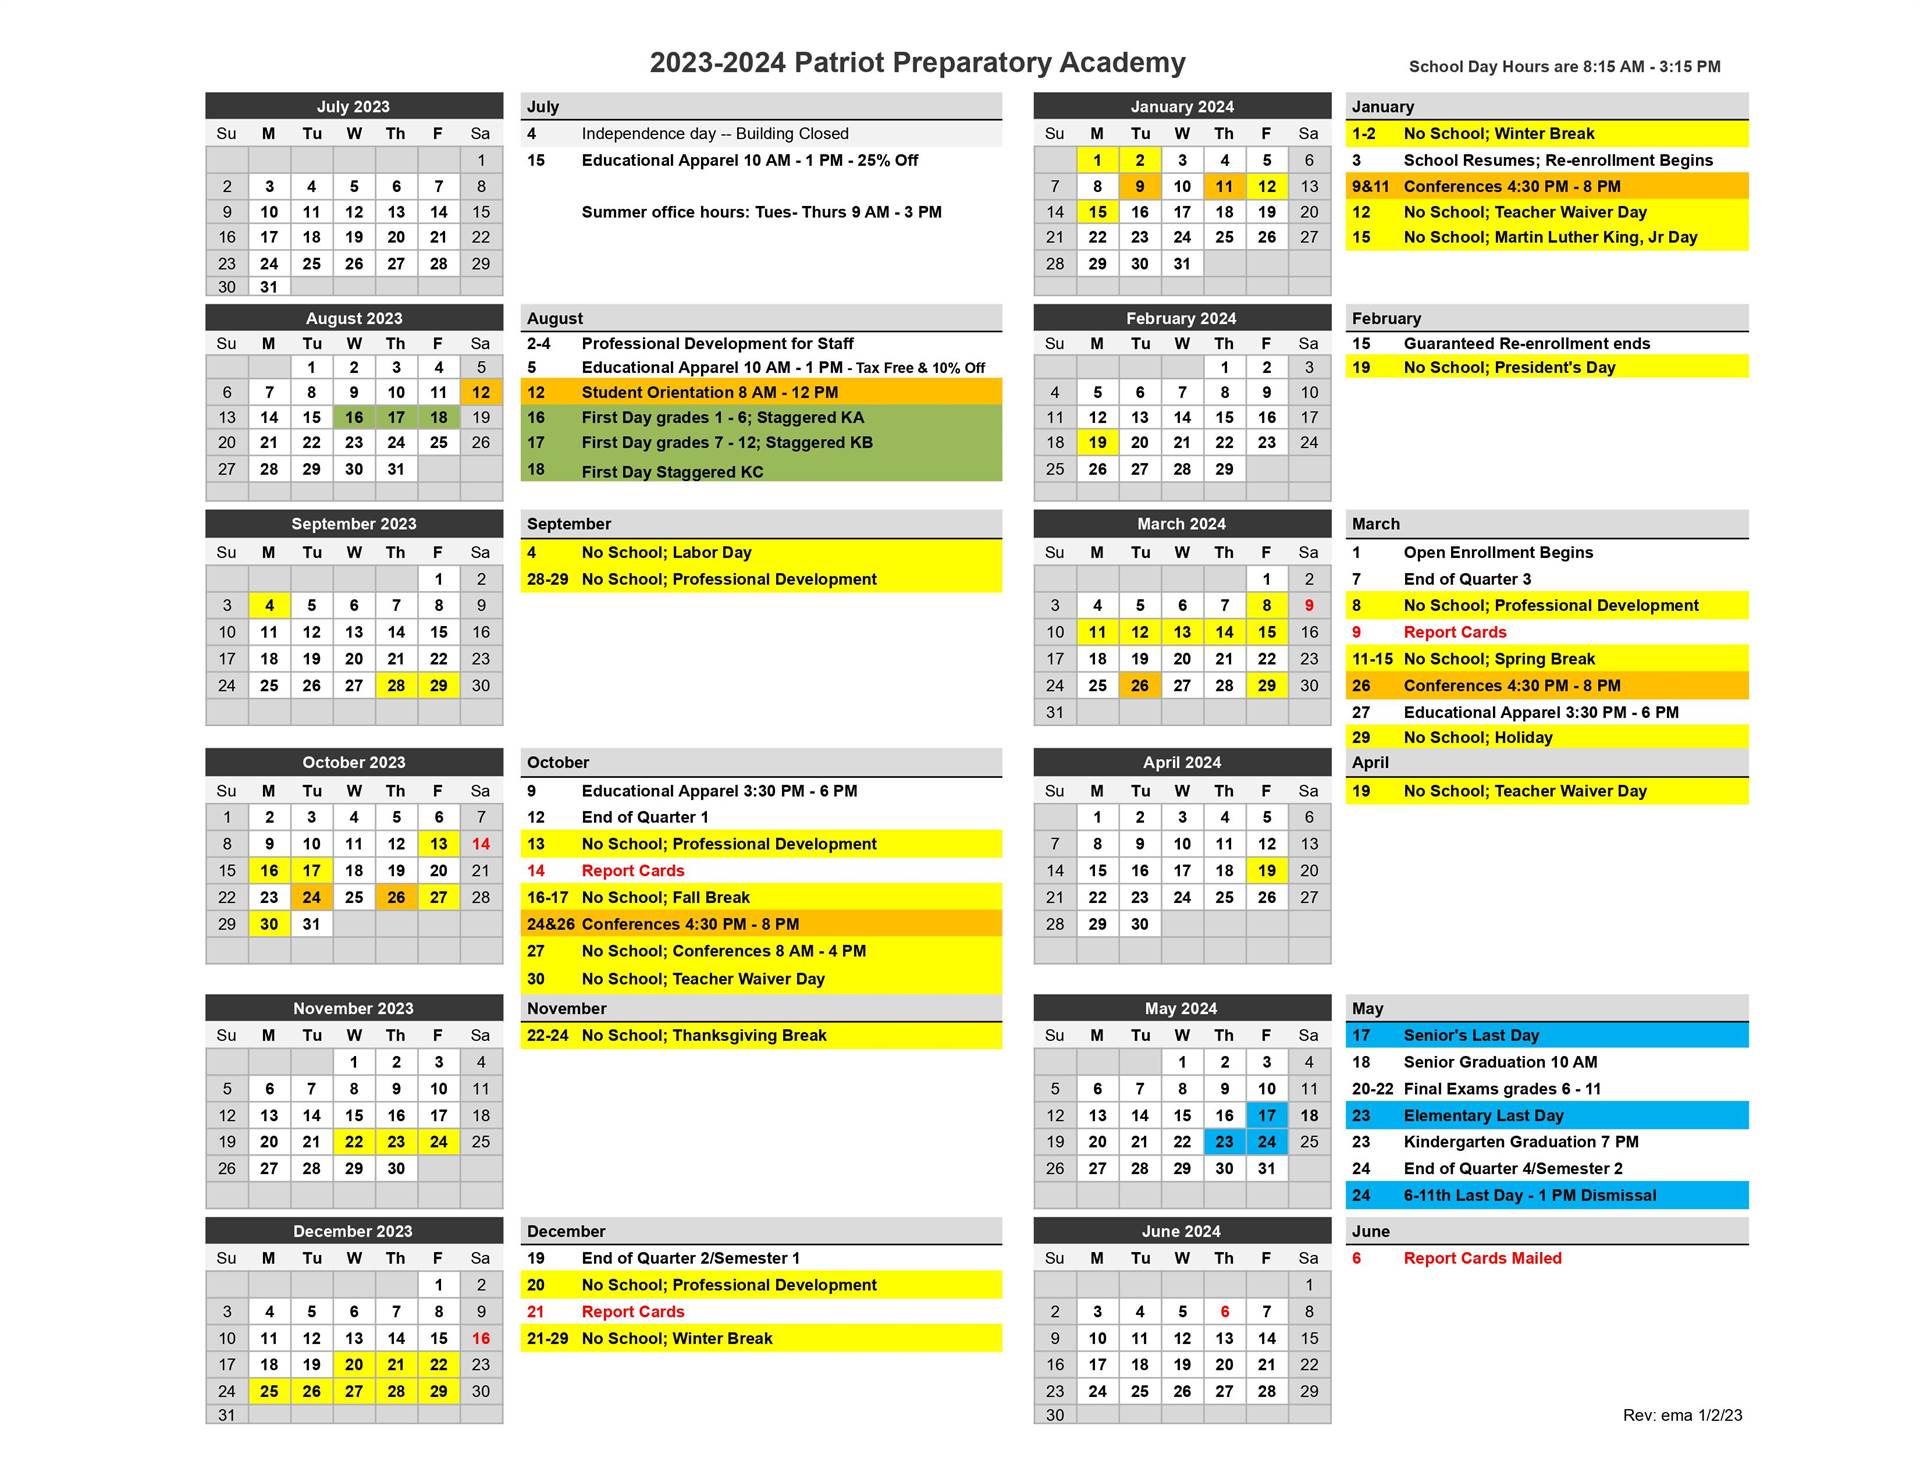 parent calendar for 23-24